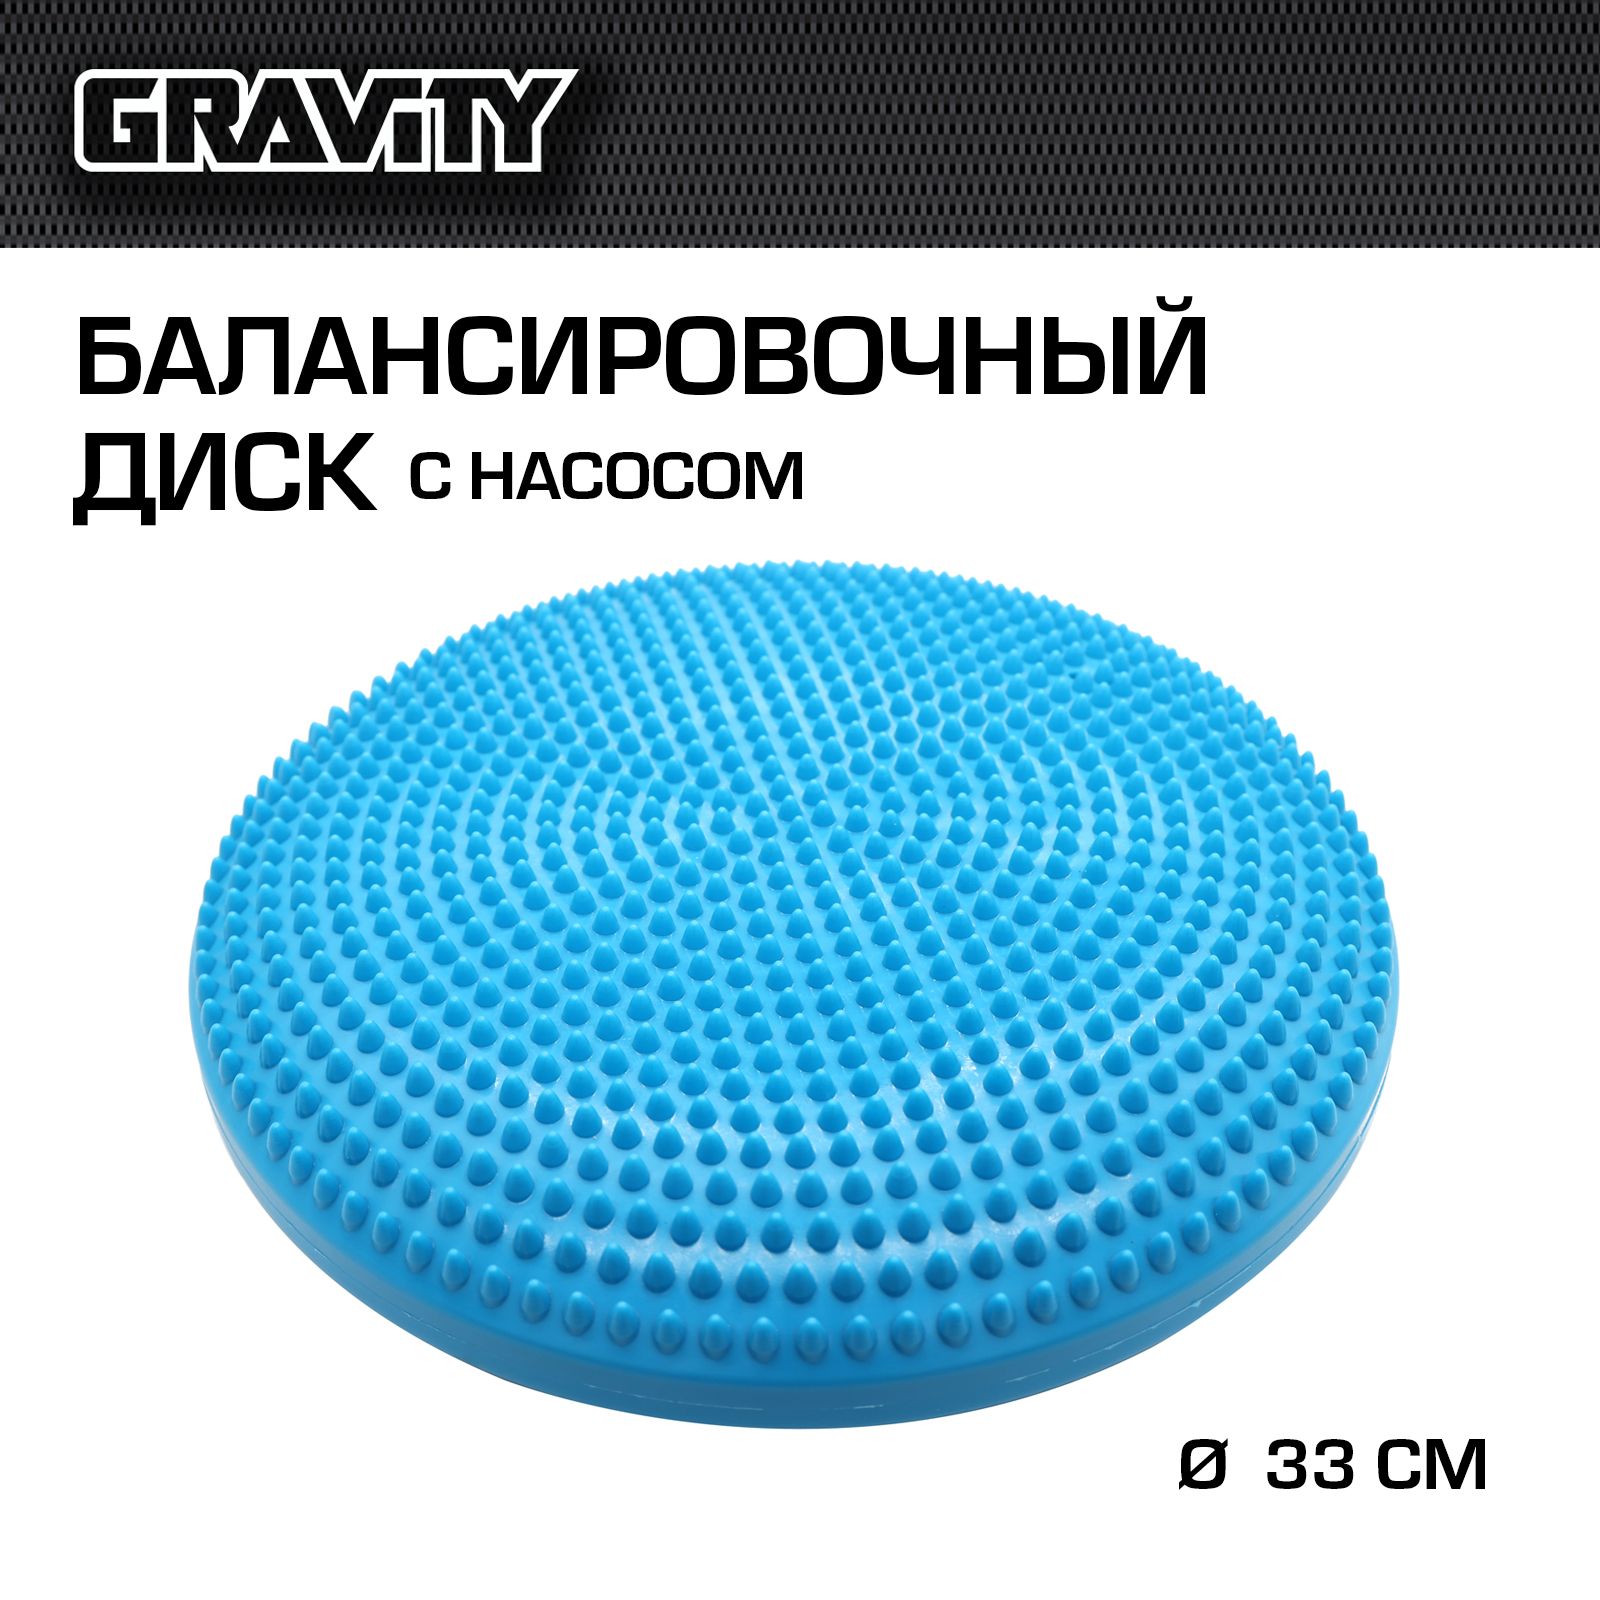 Балансировочный диск Gravity DK2111 с насосом, бирюзовый